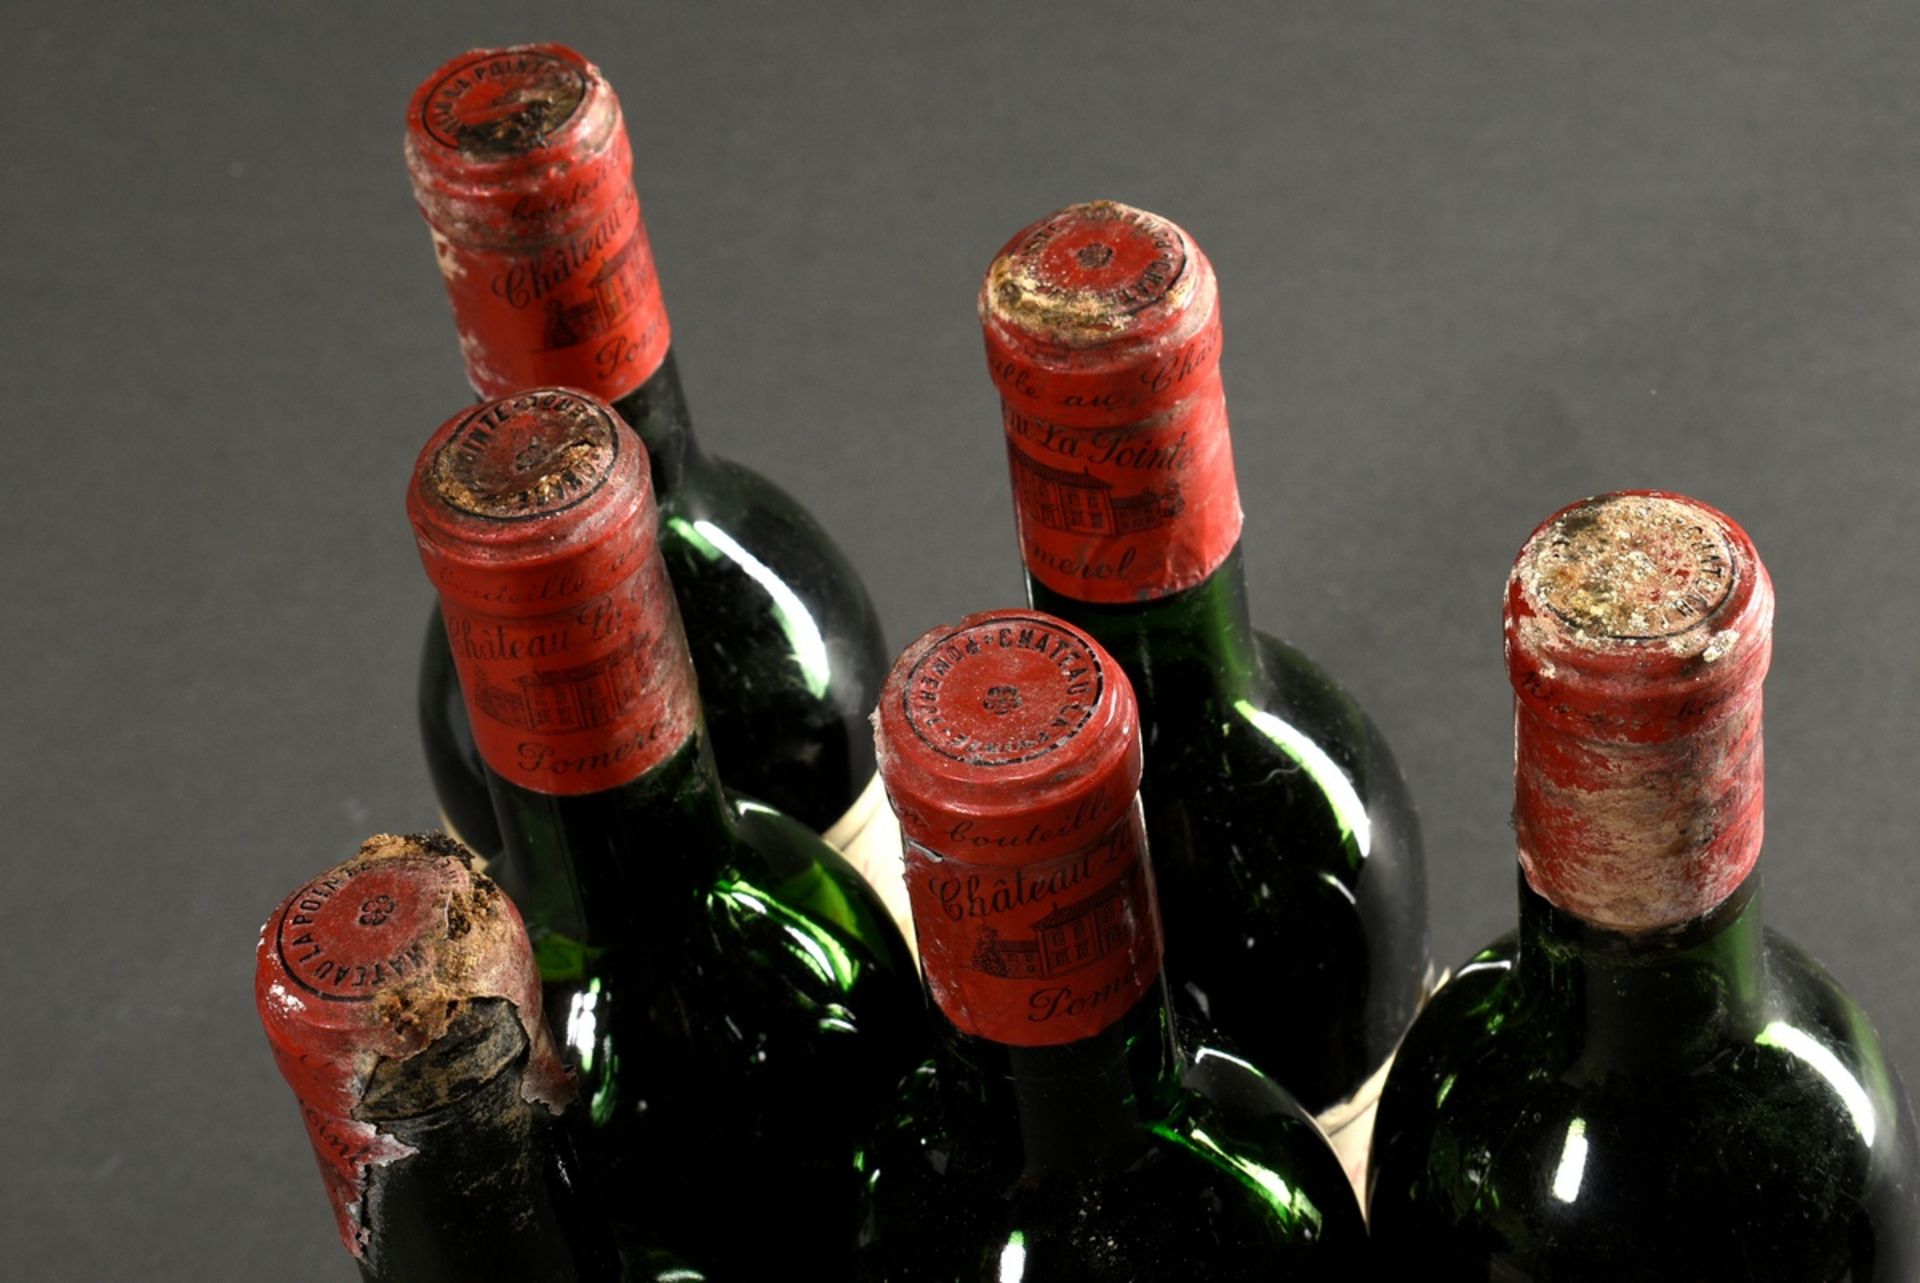 6 Flaschen 1967 Chateau La Pointe grand cru, mebac, Pomerol, Frankreich, Rotwein, 0,75l, durchgehen - Bild 6 aus 6